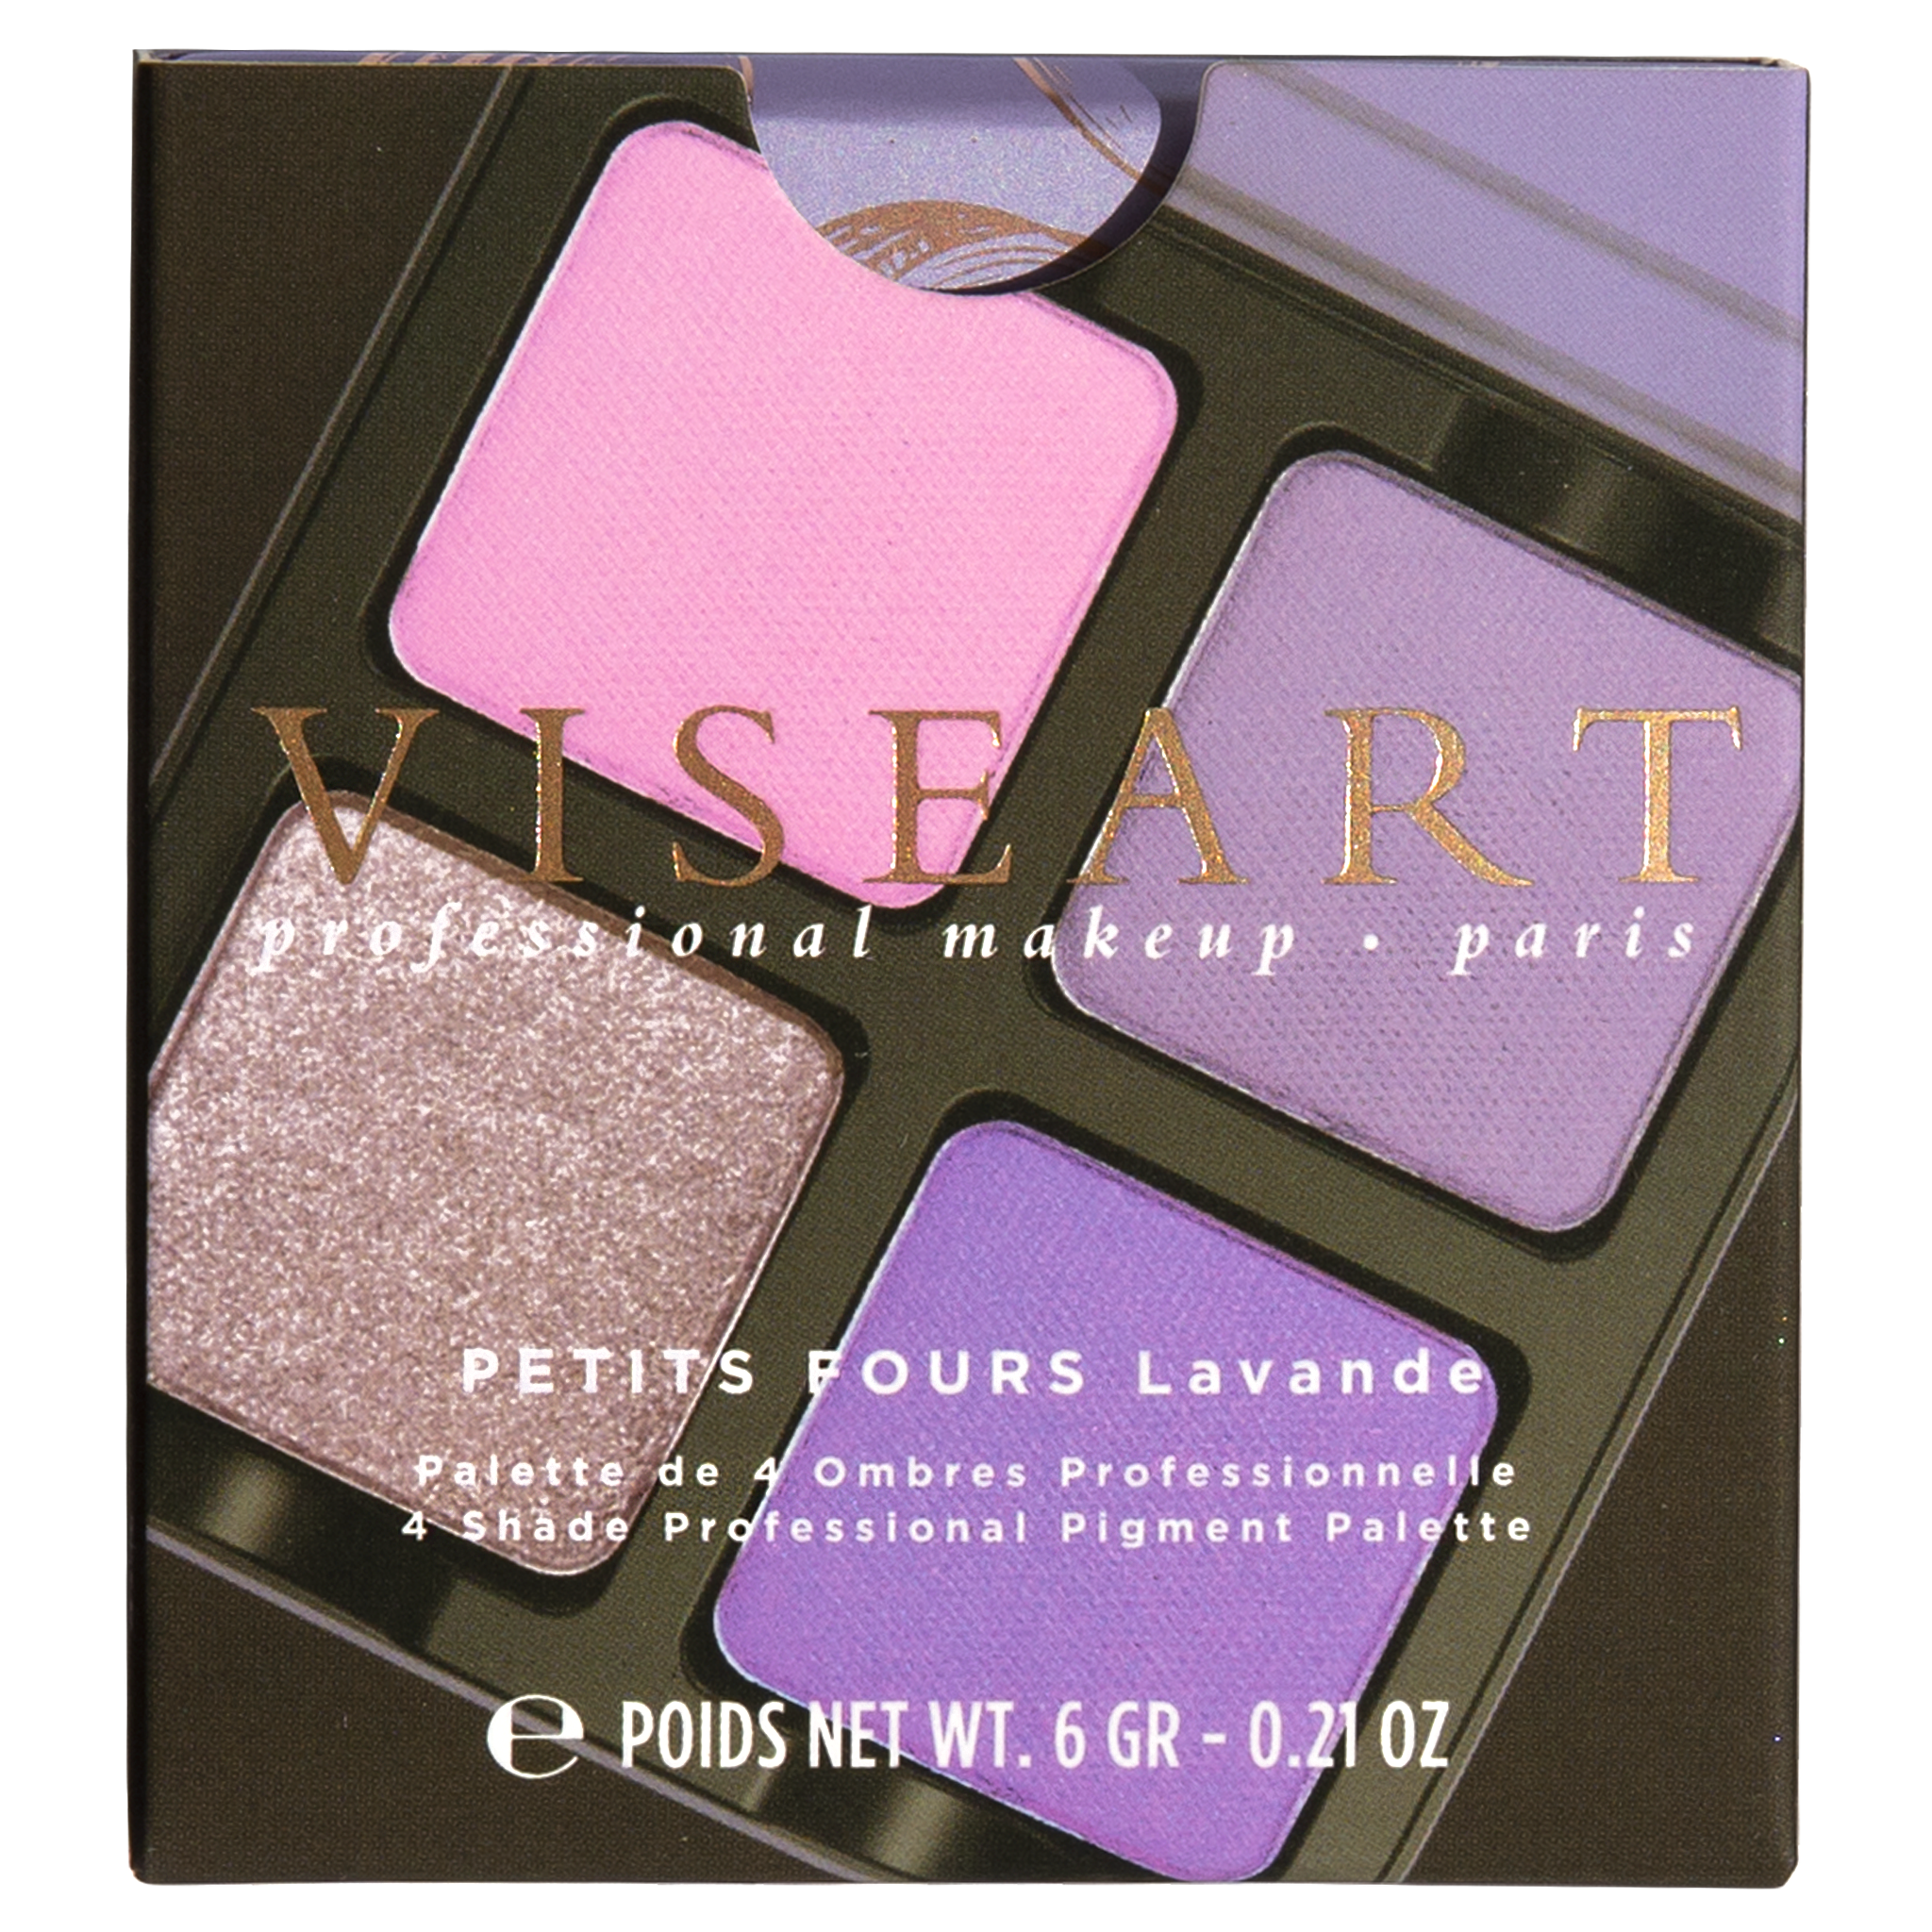 Viseart Paris Petits Fours Lavande Eyeshadow Palette Carton